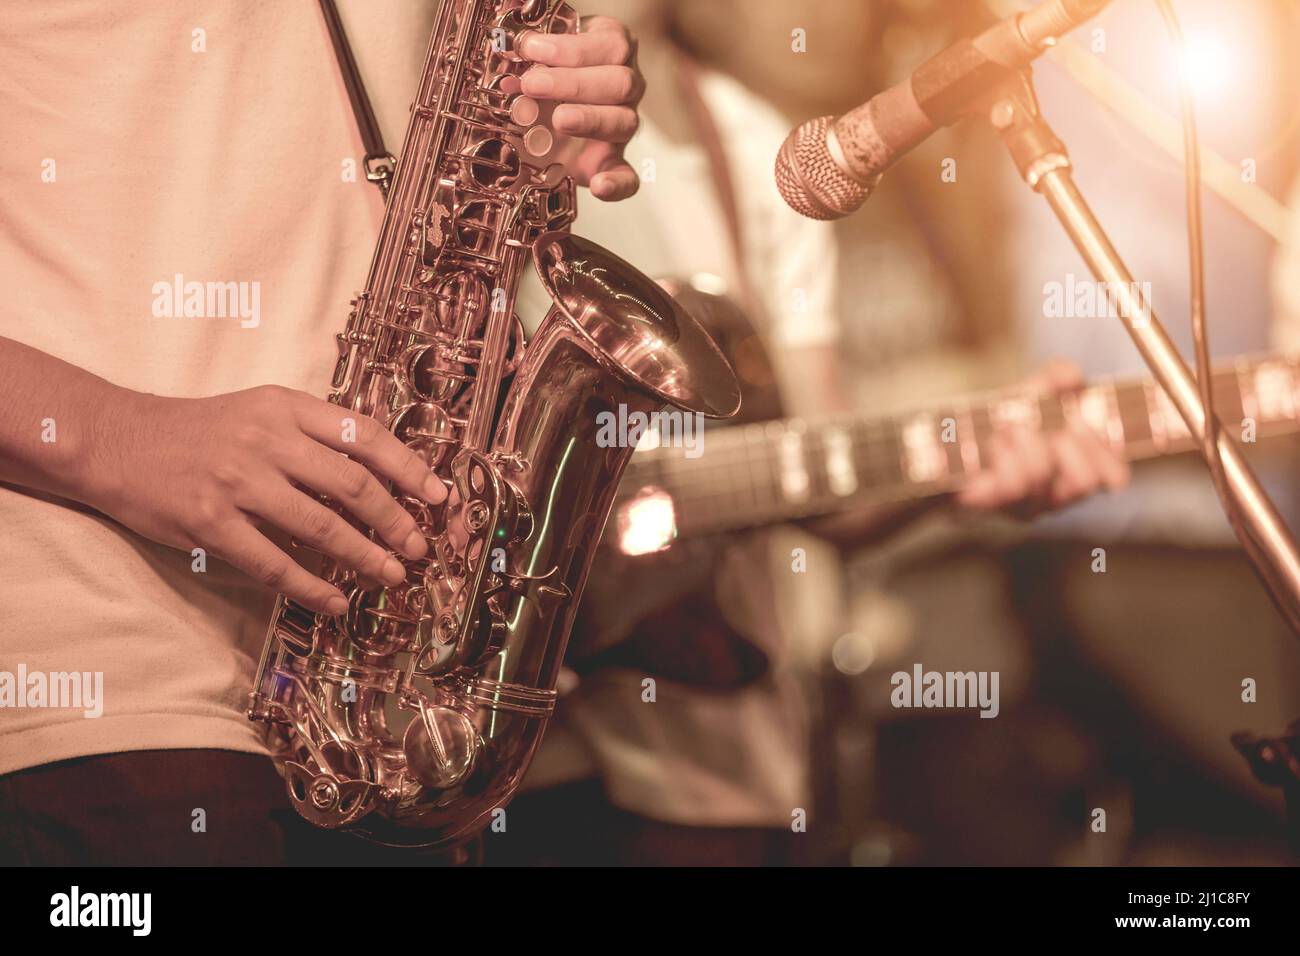 Fermez-vous Des Mains De Joueur De Saxophone De Rue Jouant L'instrument De  Musique De Saxo D'alto Au-dessus Du Fond Bleu, Plan Ra Image stock - Image  du hymne, beau: 102756853